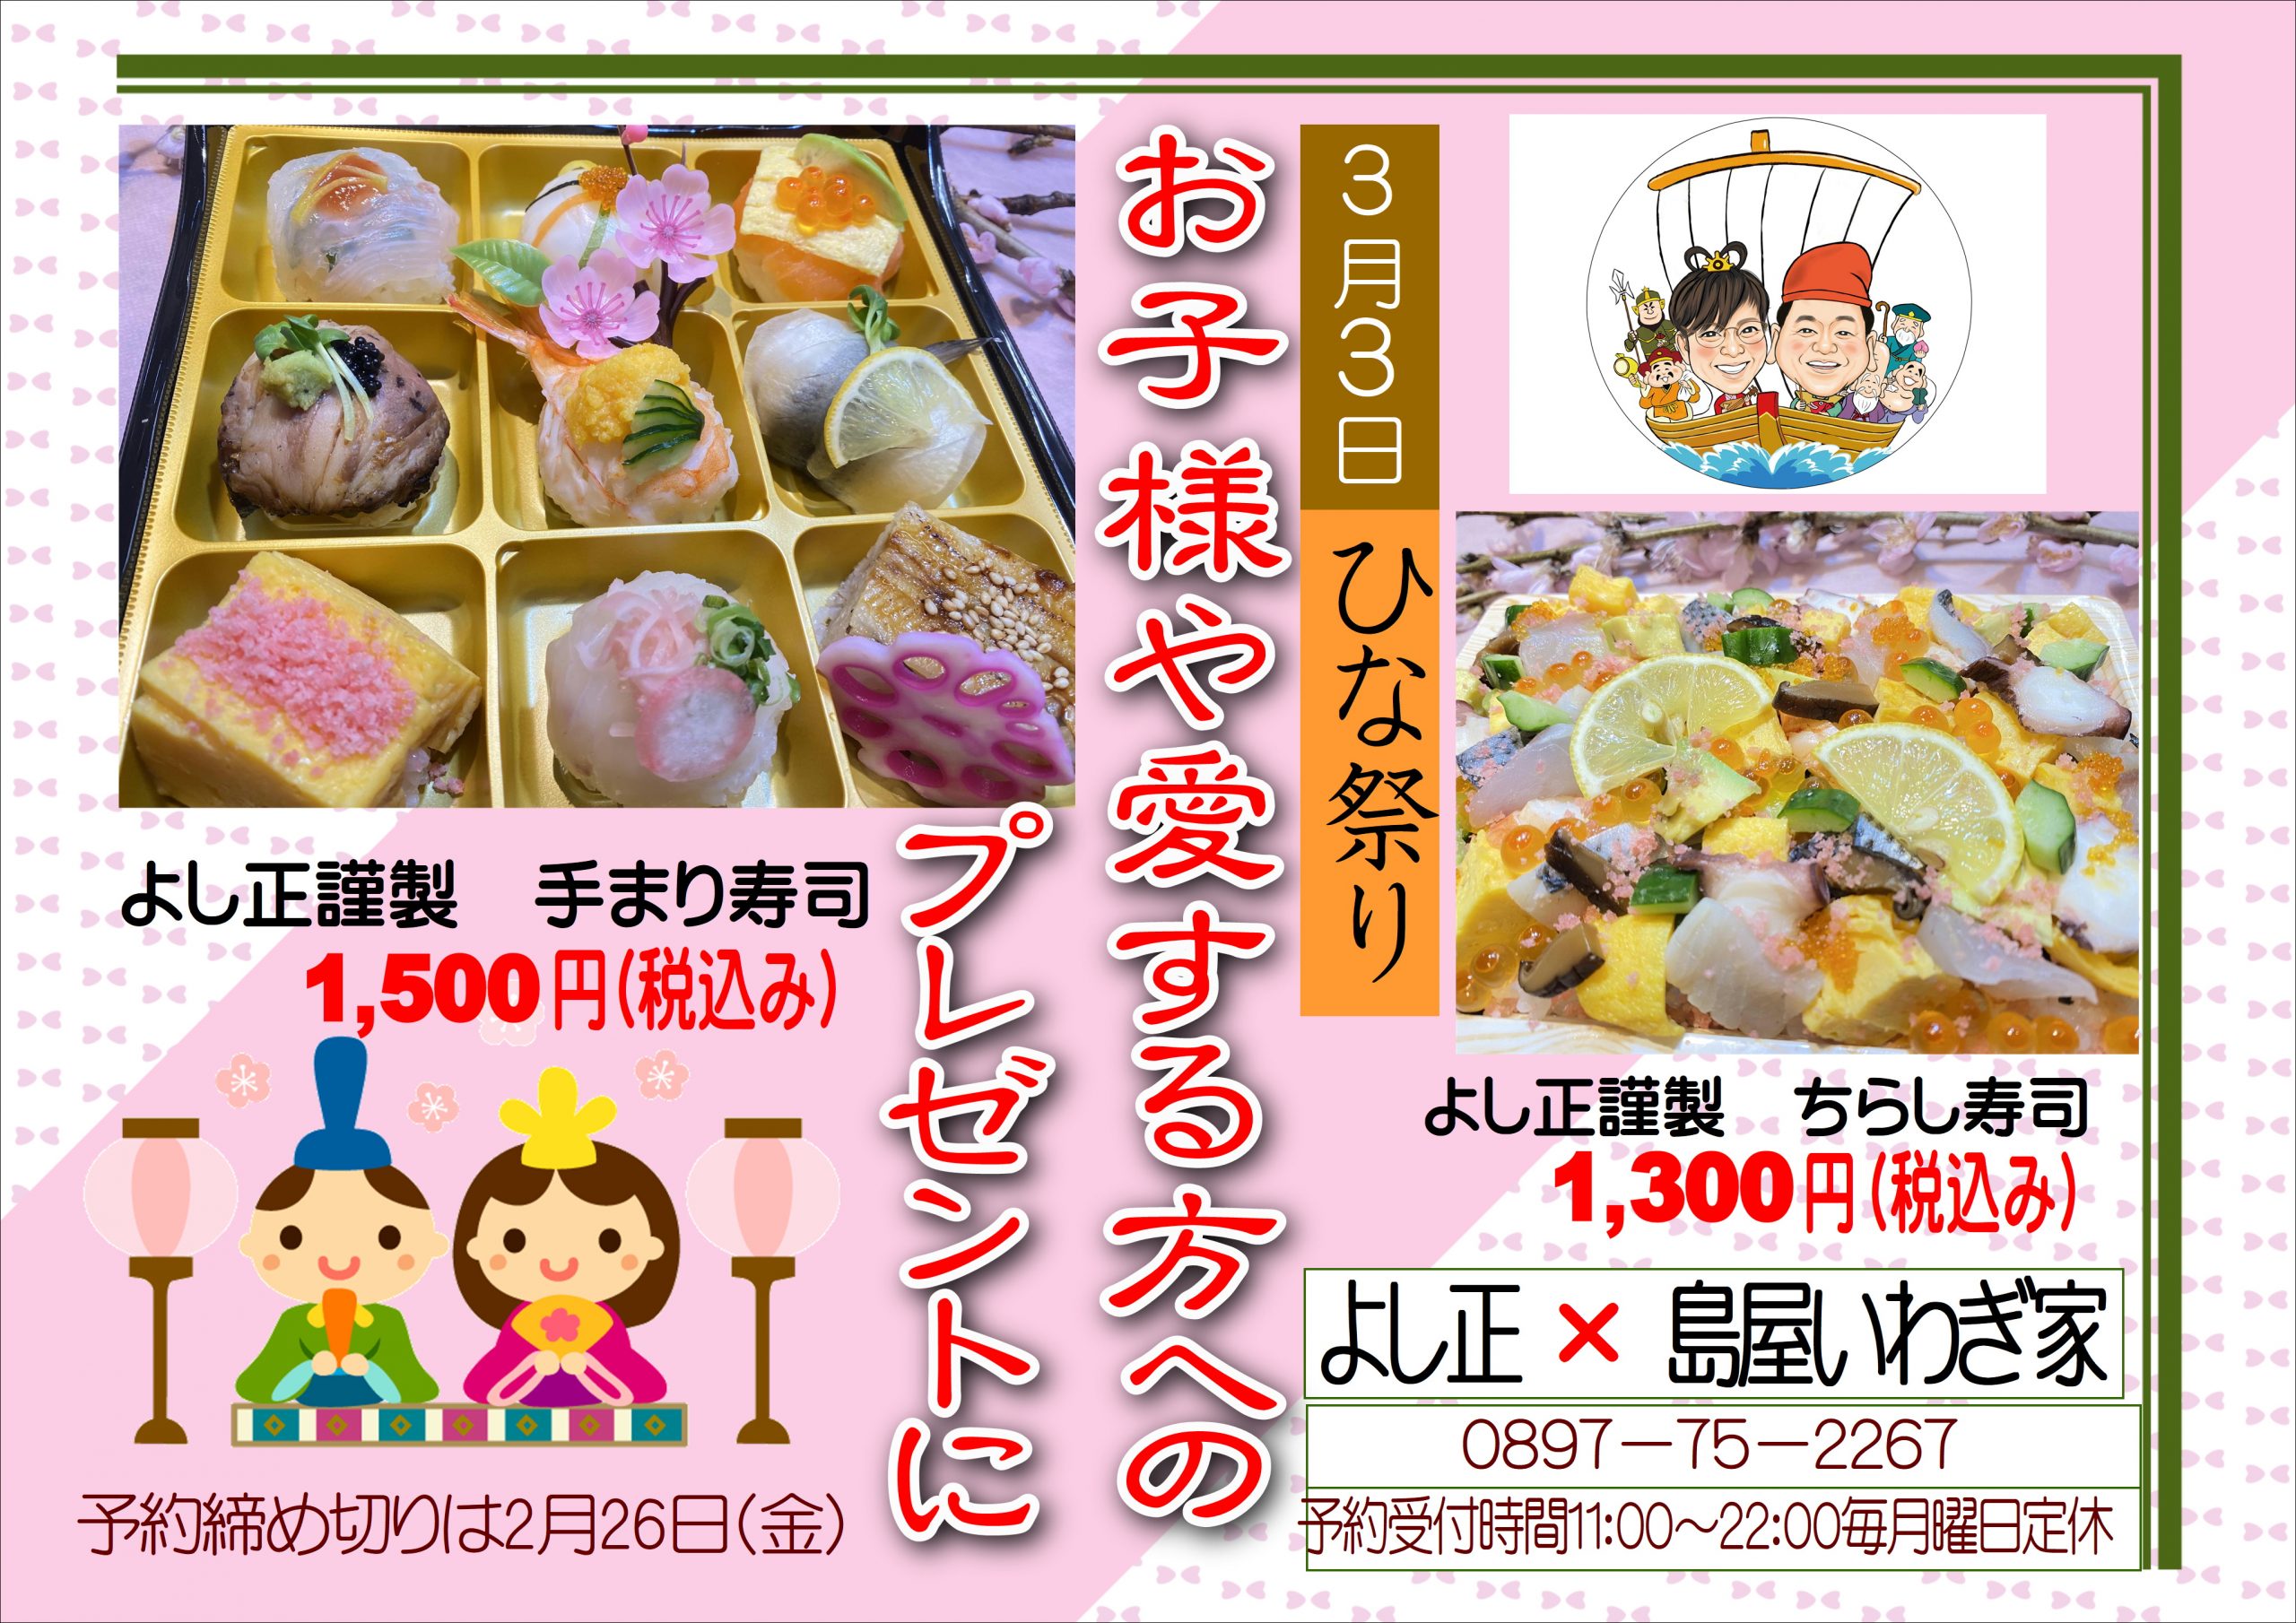 2月恵方巻のお礼と3月ひな祭り寿司のご案内 愛媛 岩城島の遊漁船は民宿 よし正